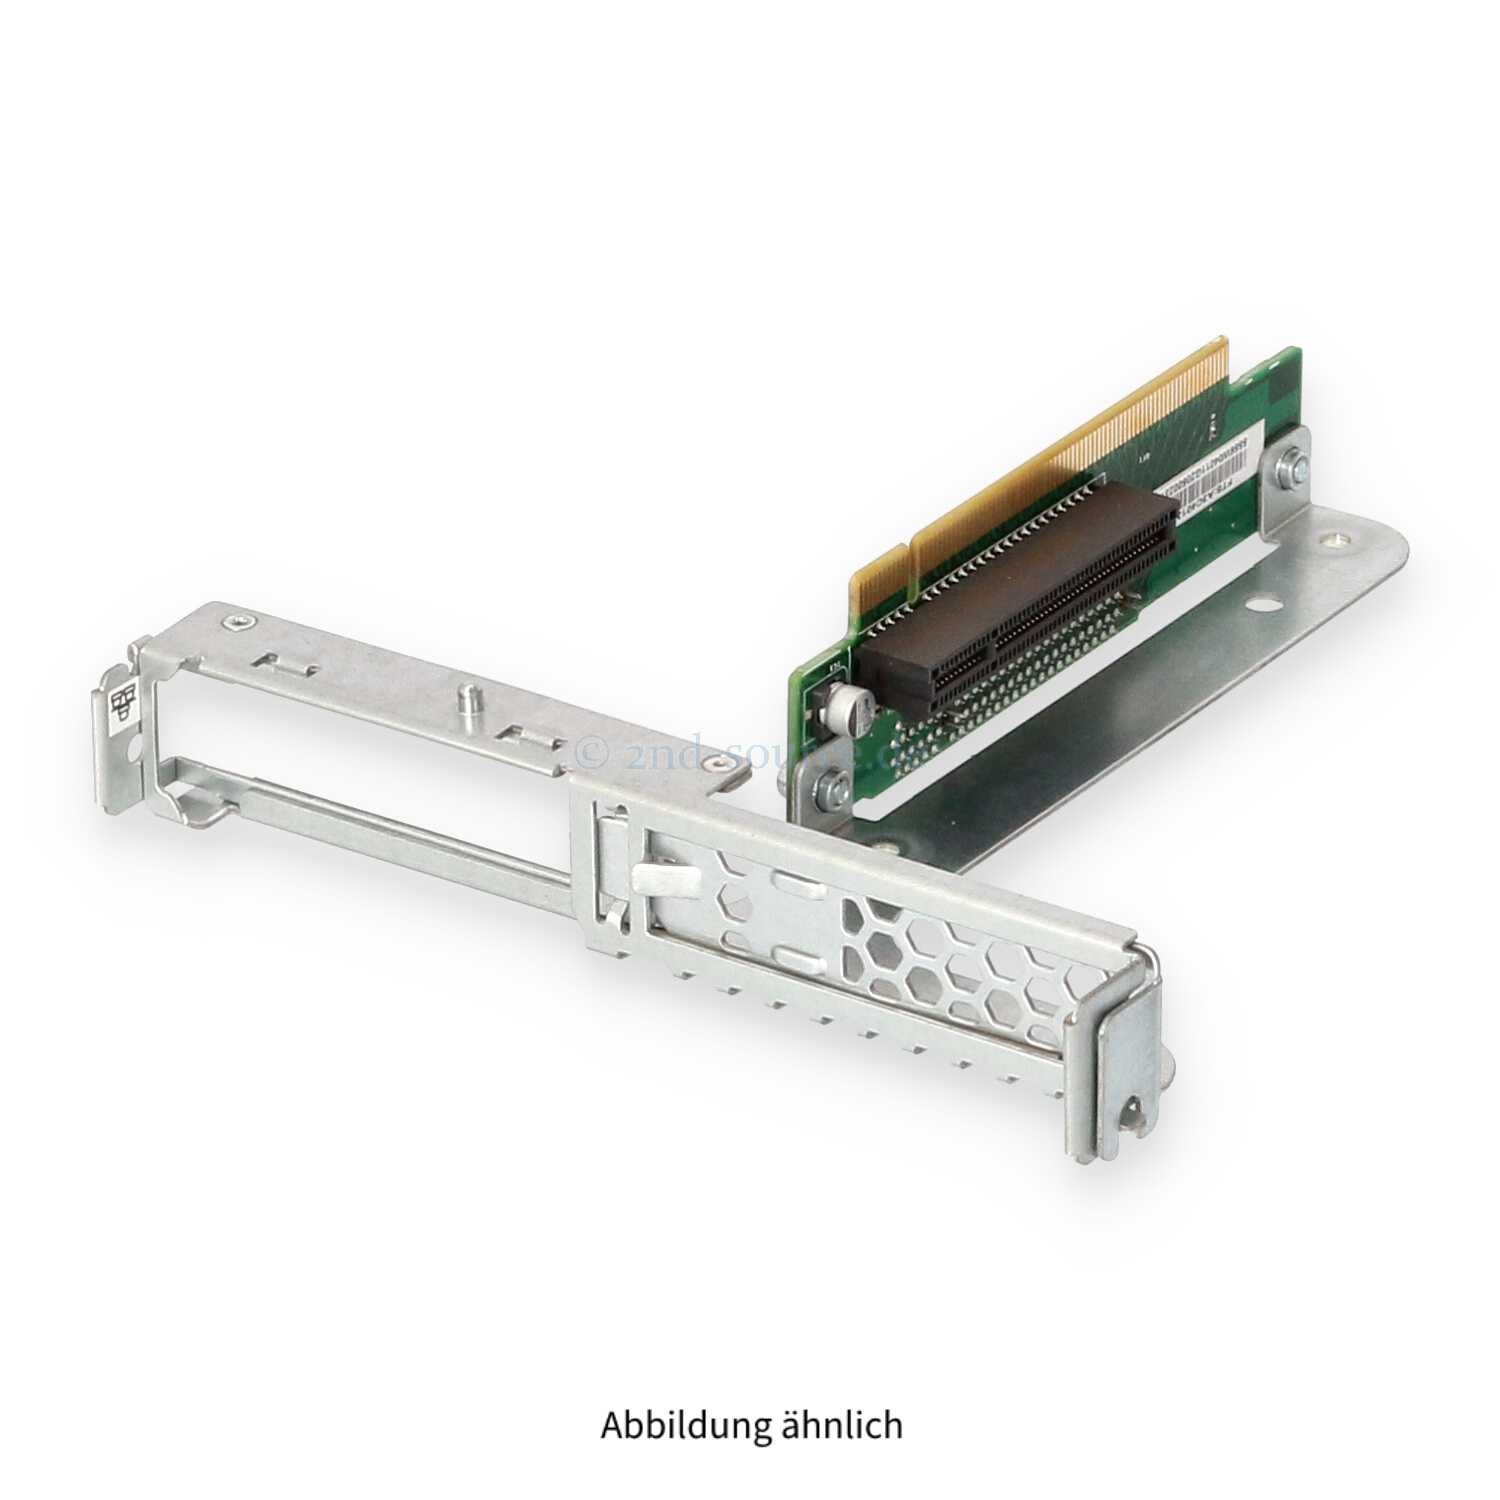 Fujitsu PCI Express x8 Riser Board Primergy RX200 S7 S8 A3C40137294